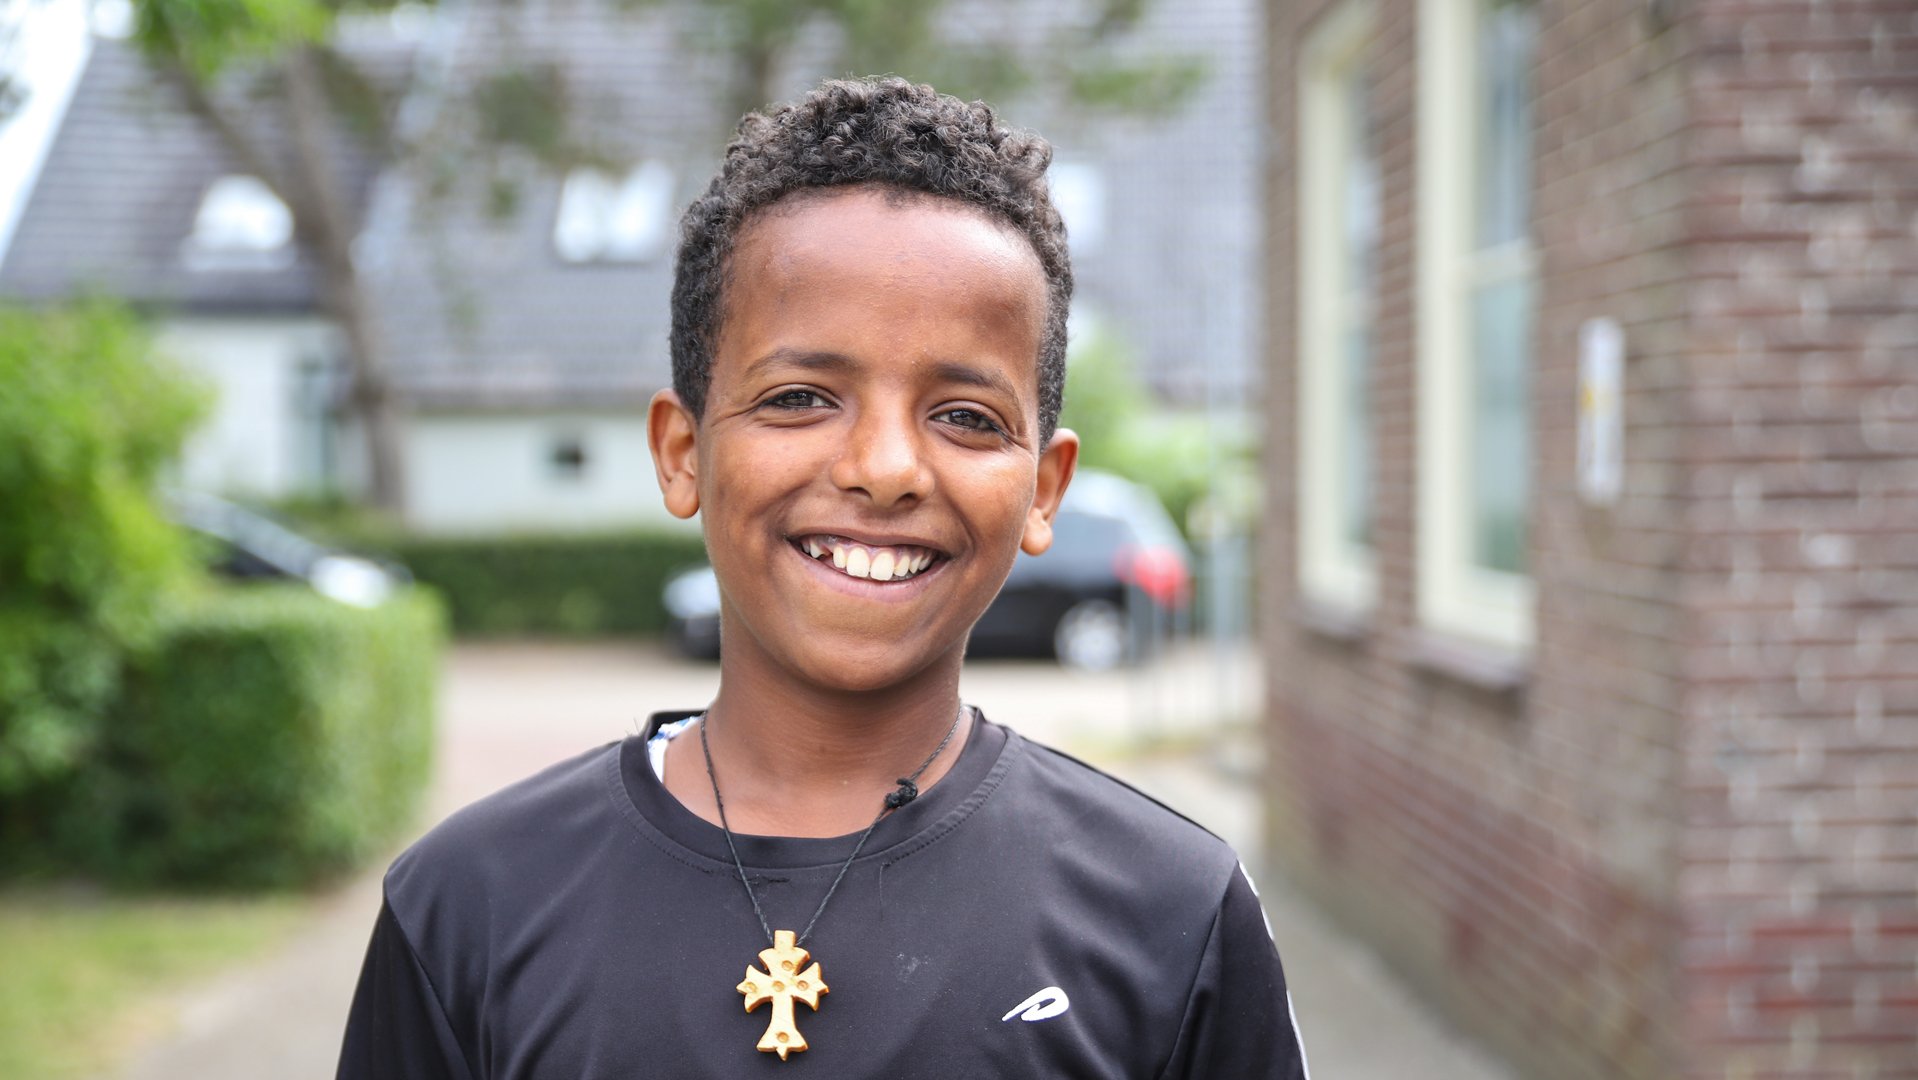 War Child TeamUp helpt gevluchte families in Nederland